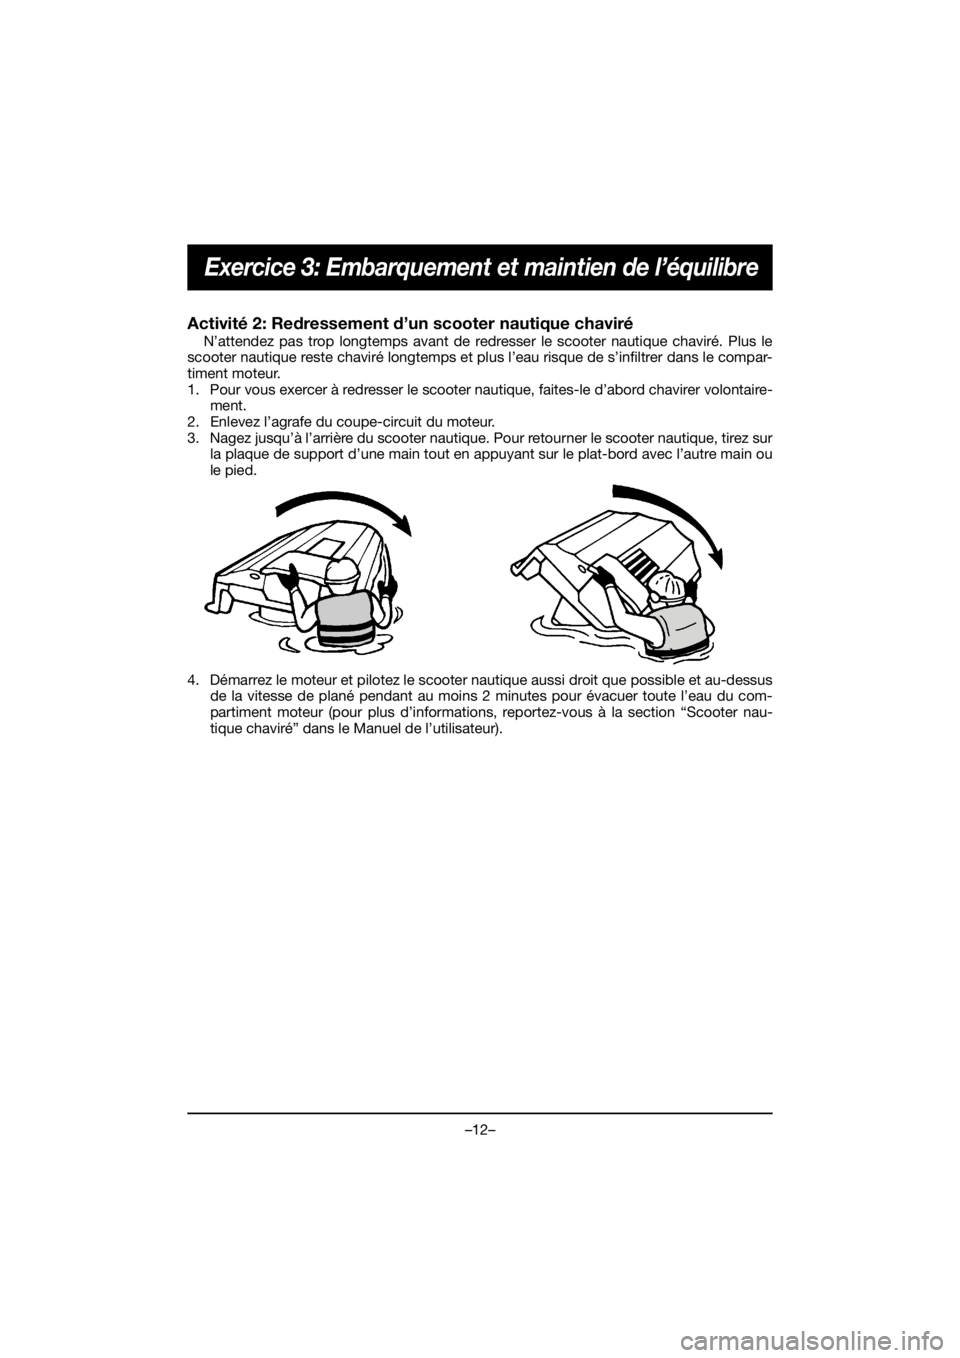 YAMAHA EX 2020  Manual de utilização (in Portuguese) –12–
Exercice 3: Embarquement et maintien de l’équilibre
Activité 2: Redressement d’un scooter nautique chaviré 
N’attendez pas trop longtemps avant de redresser le scooter nautique chavi